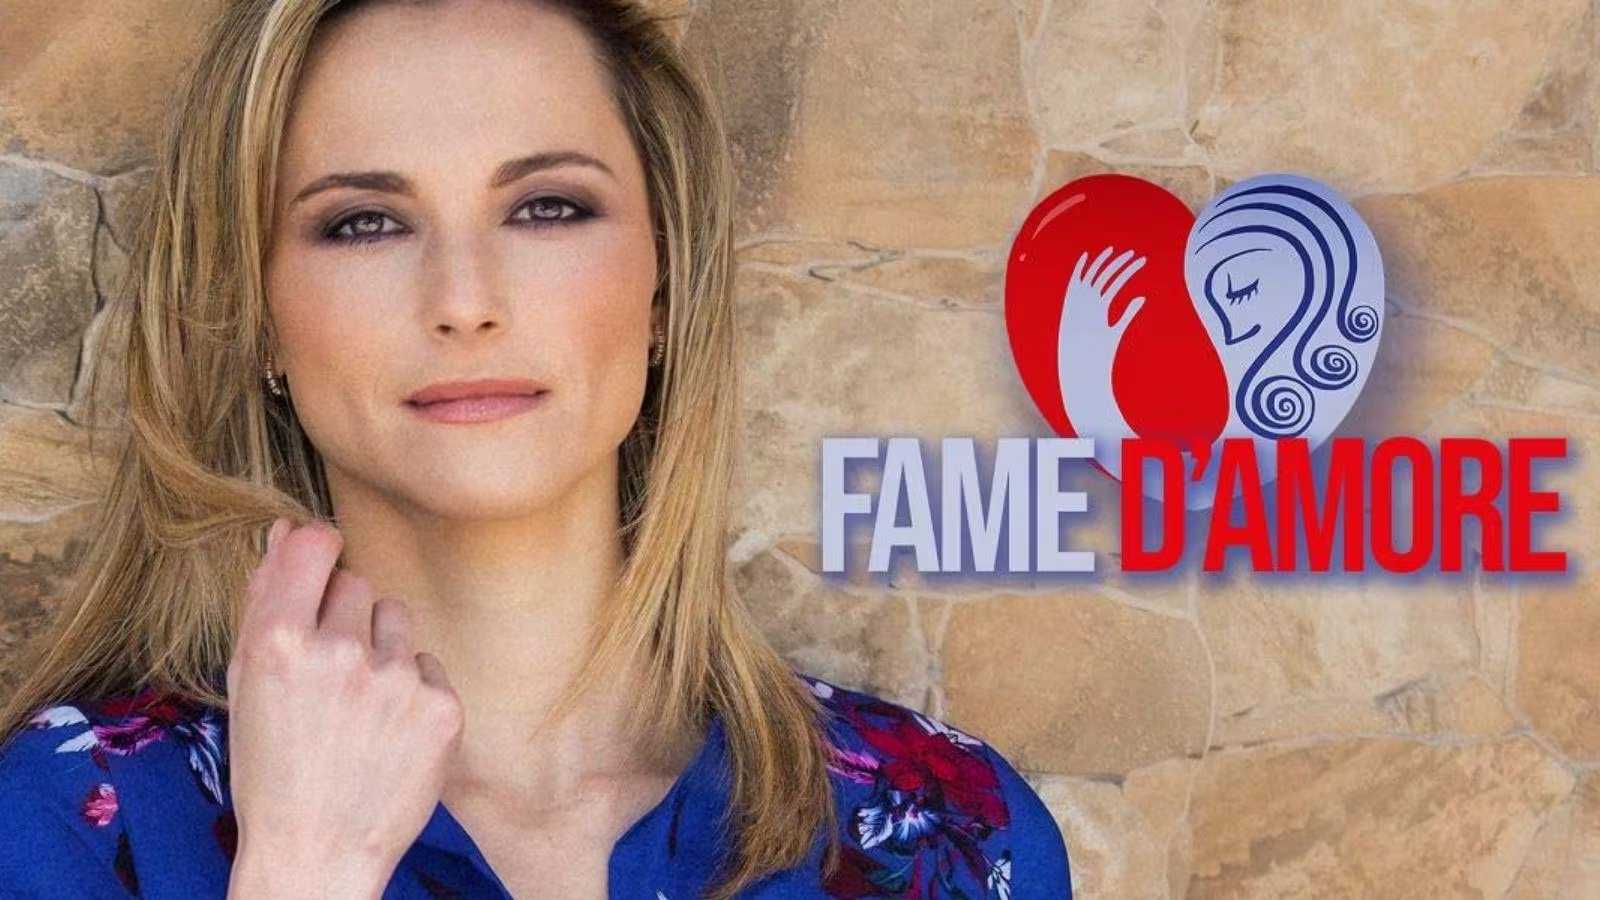 Stasera in tv torna l'appuntamento con "Fame d'Amore" 